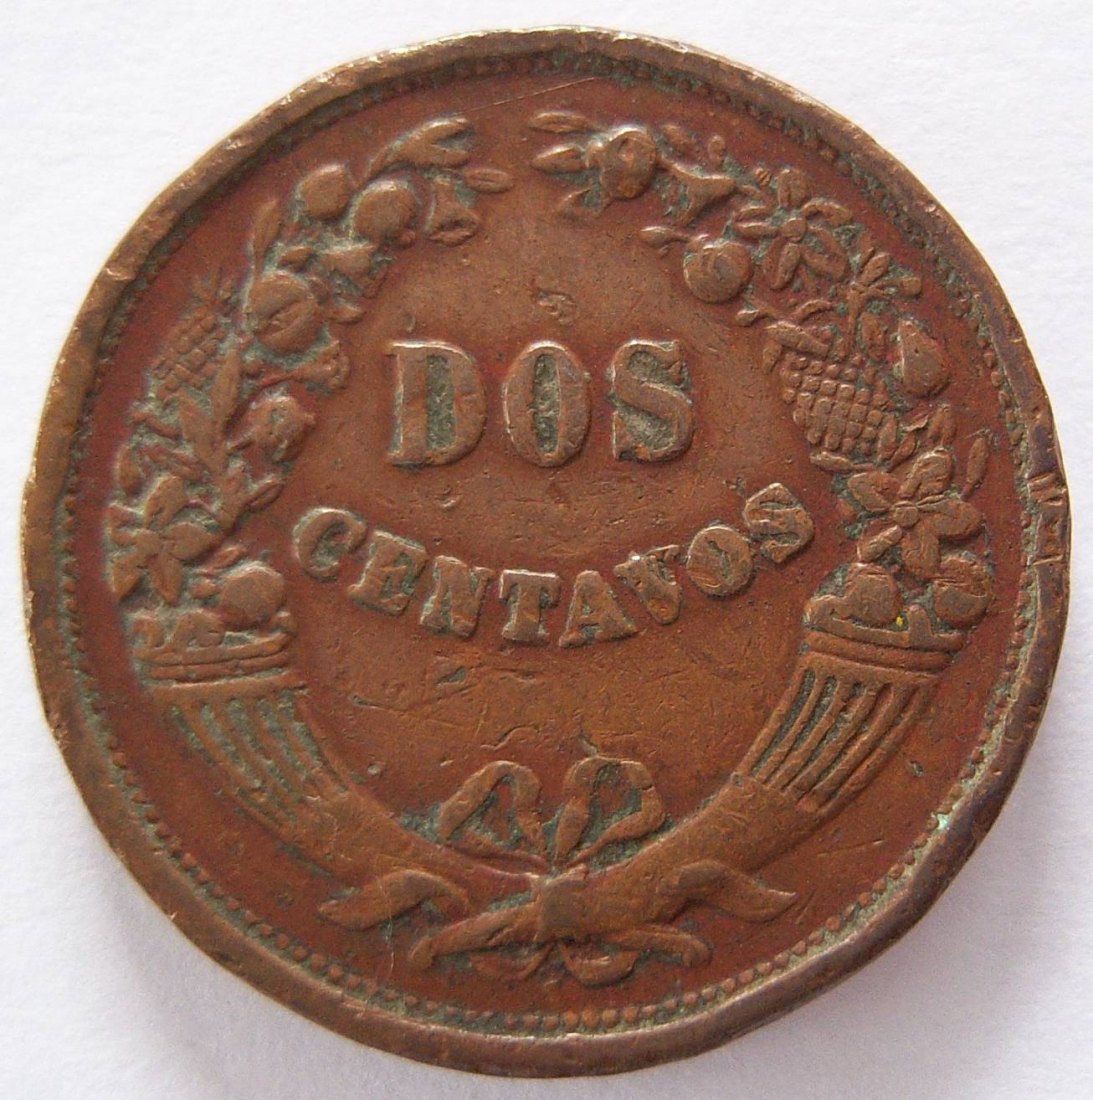  Peru Dos 2 Centavos 1935 C   